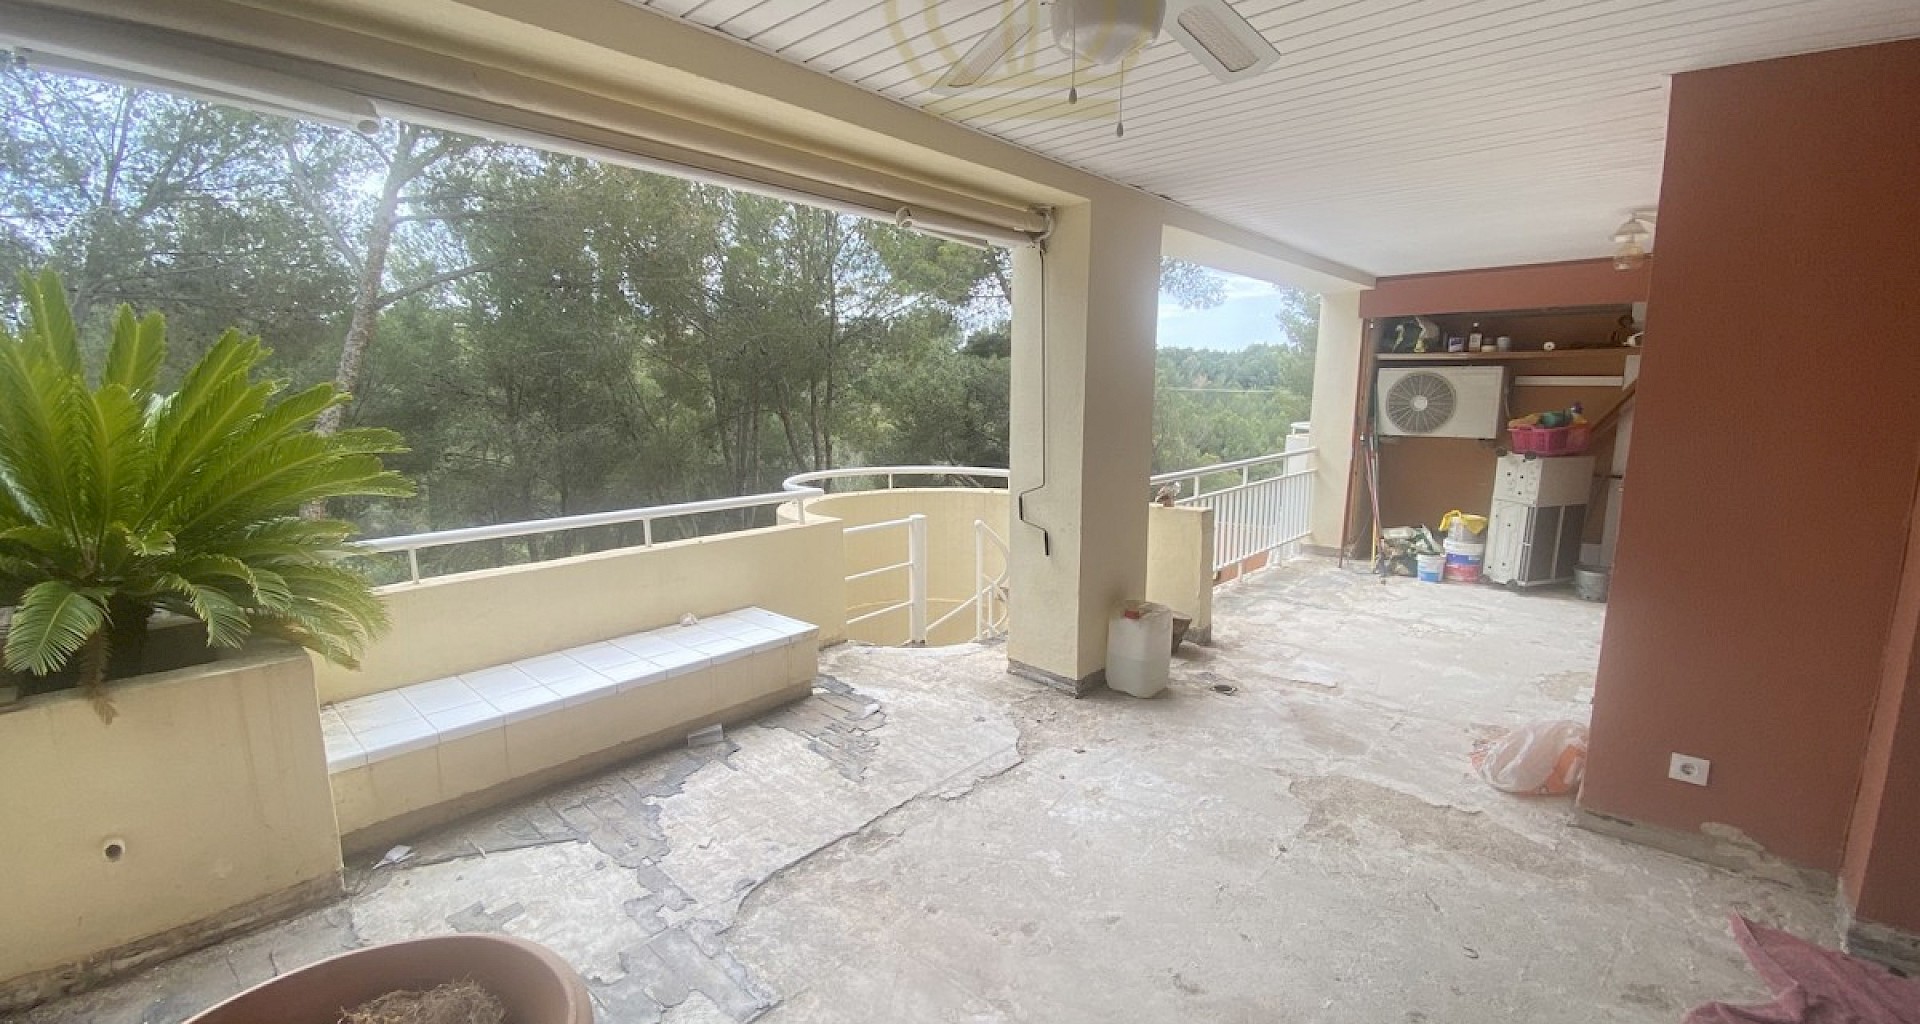 KROHN & LUEDEMANN Duplex Wohnung mit Pool zur Renovierung in Bendinat nähe Palma 